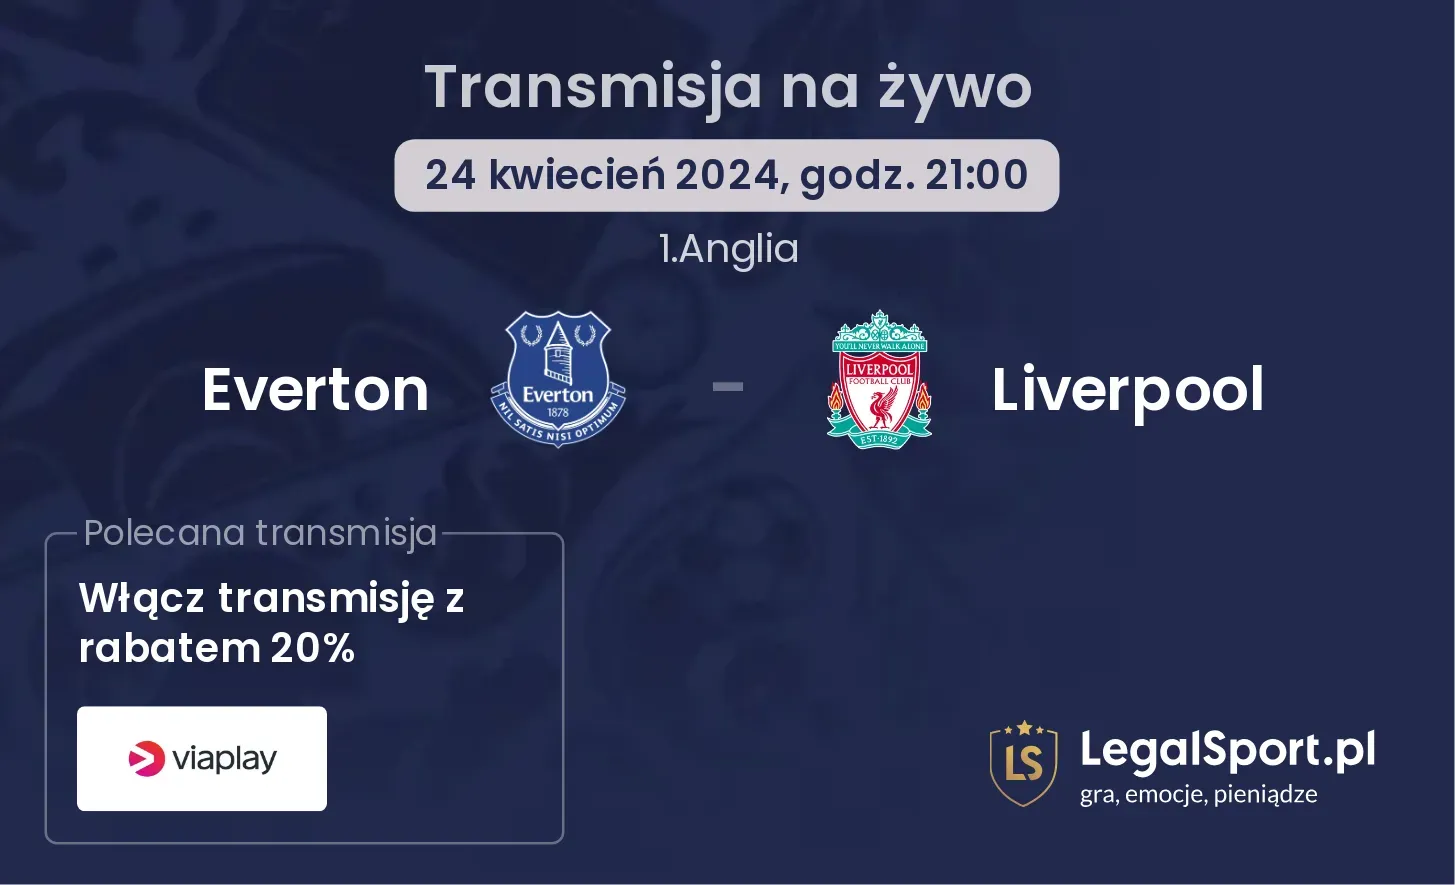 Everton - Liverpool transmisja na żywo